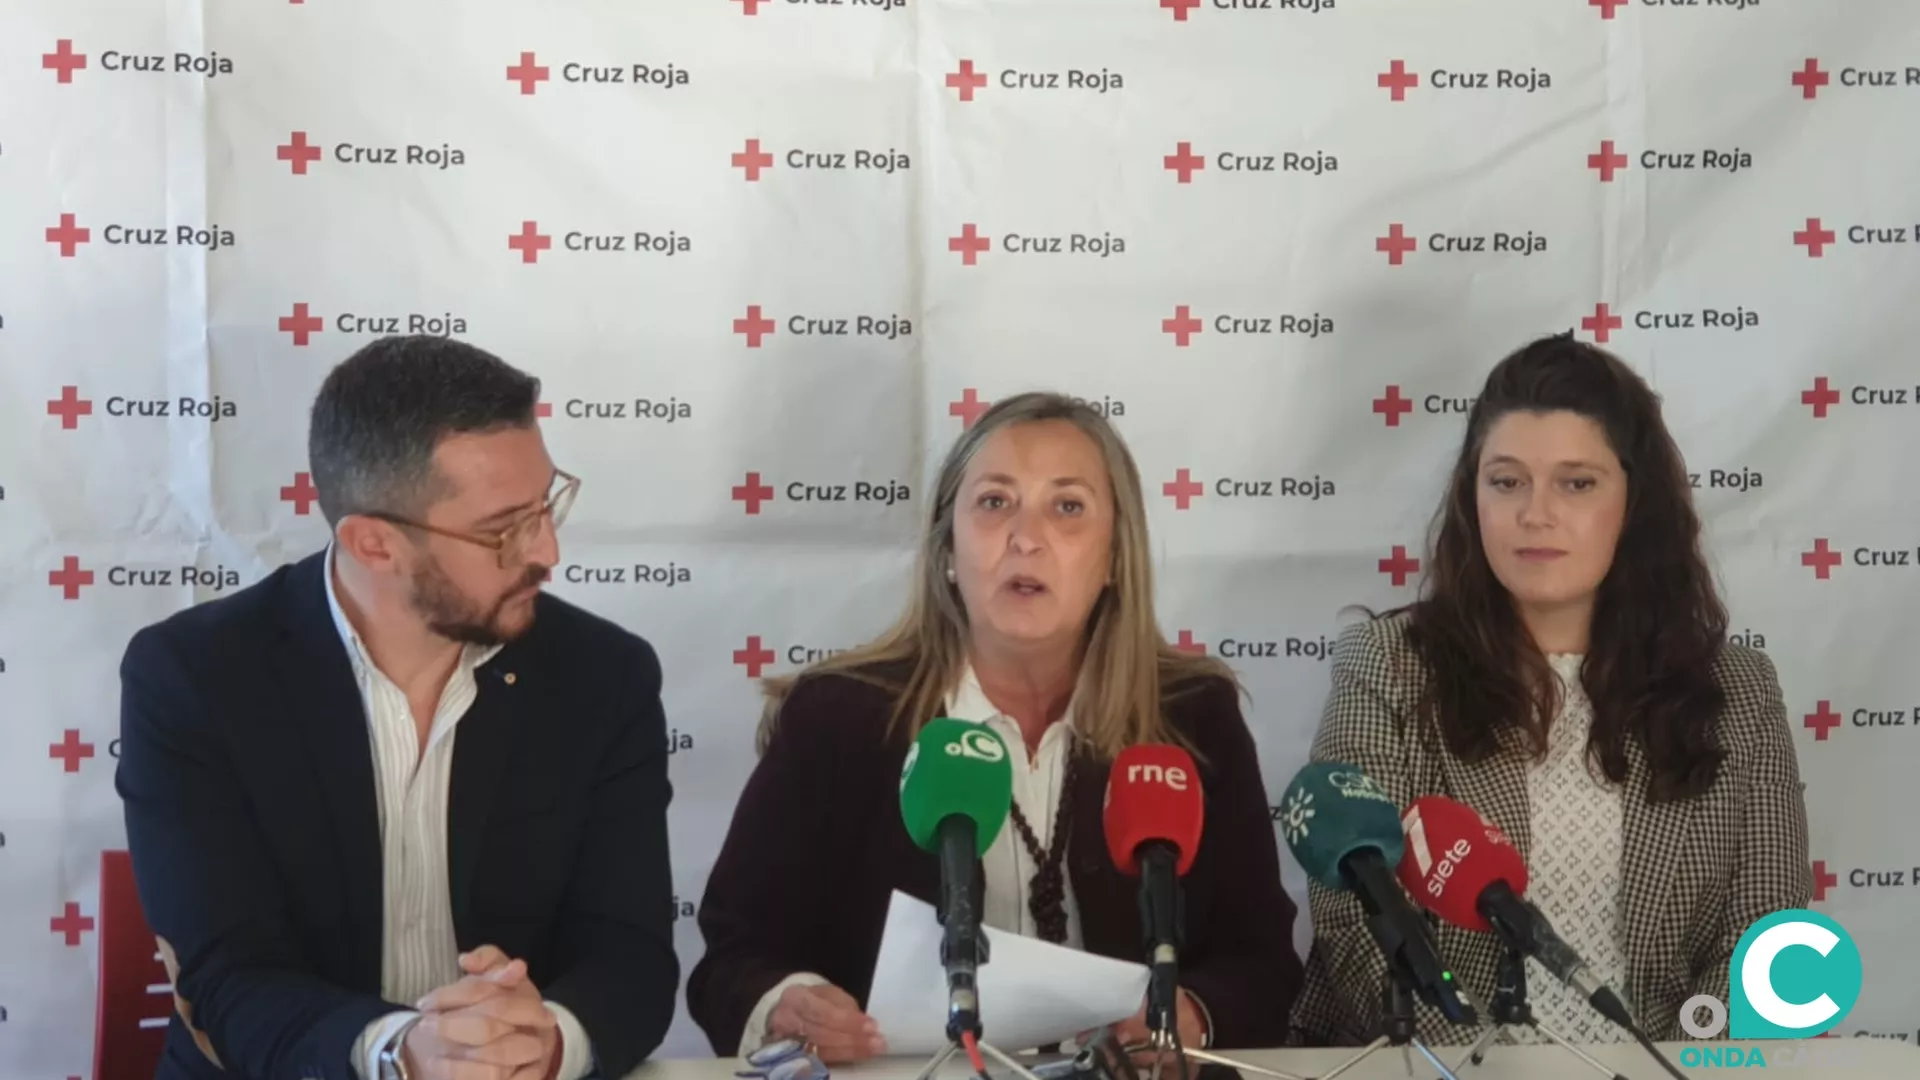 La presidenta provincial de Cruz Roja, Carmen de Lara, presenta los actos para la celebración de su 150 aniversario en Cádiz.